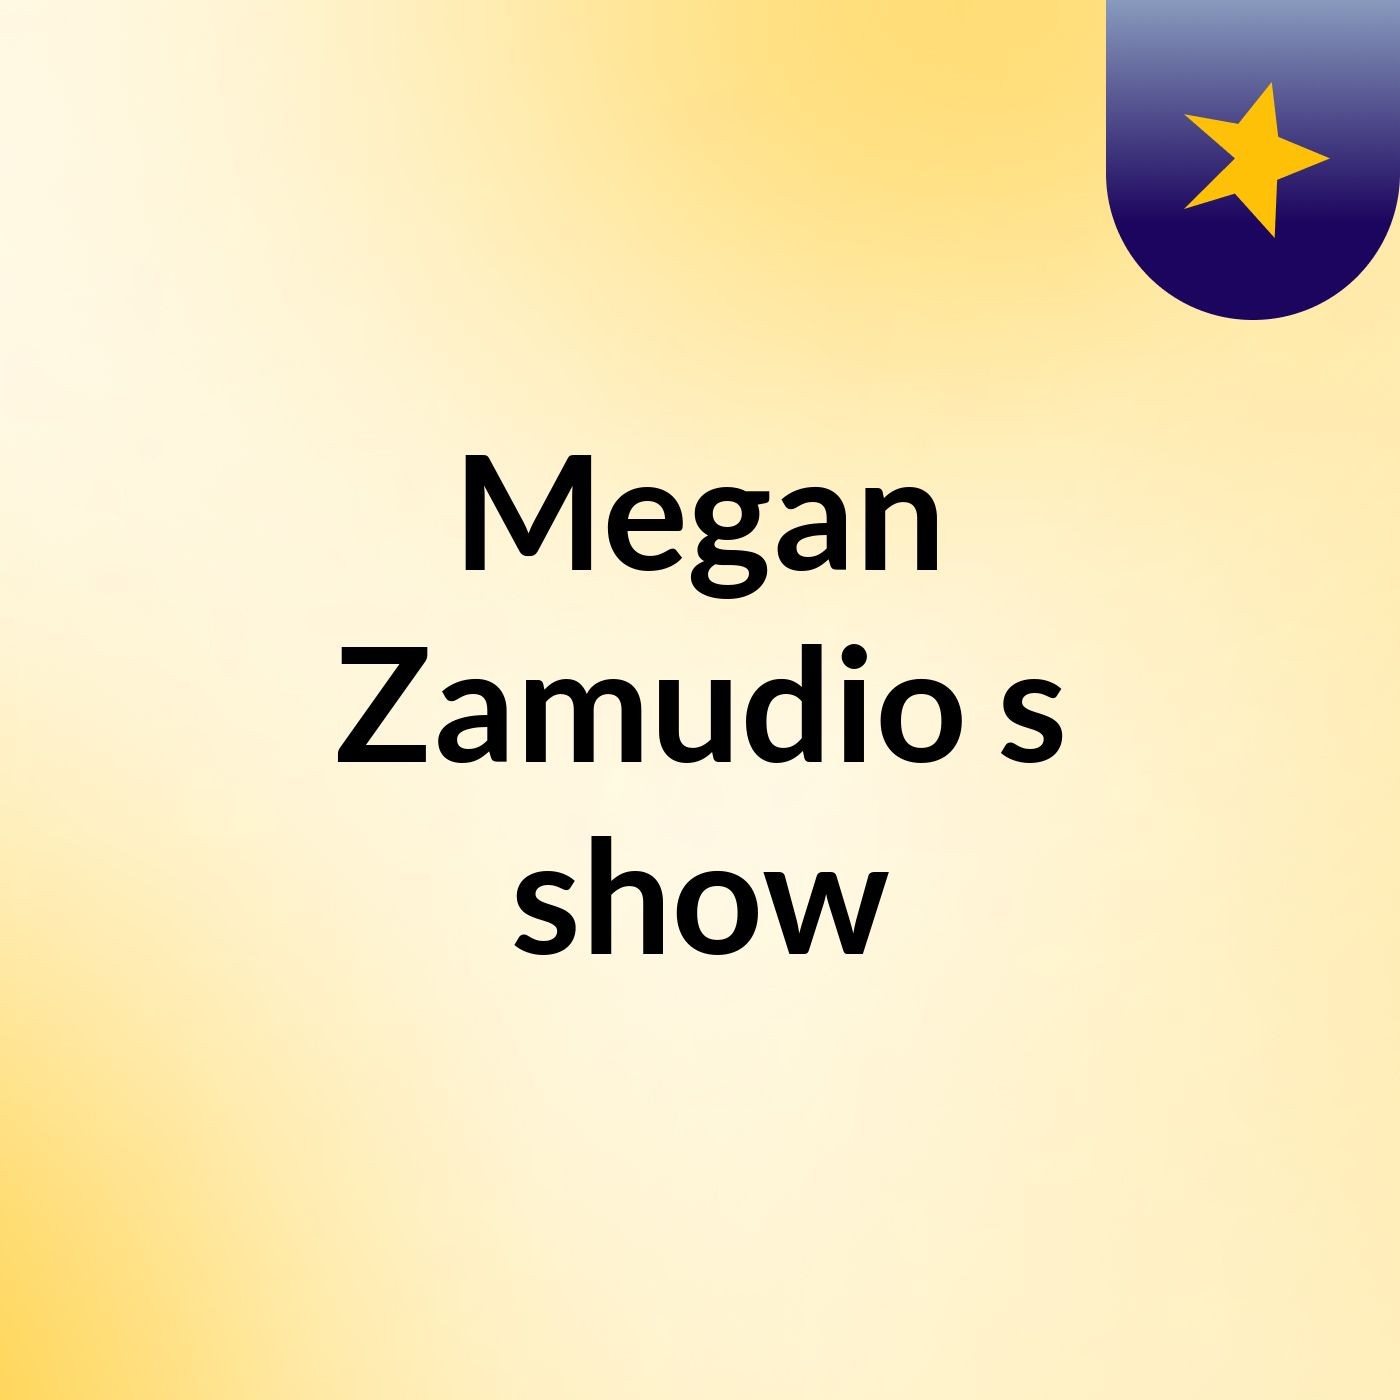 Megan Zamudio's show